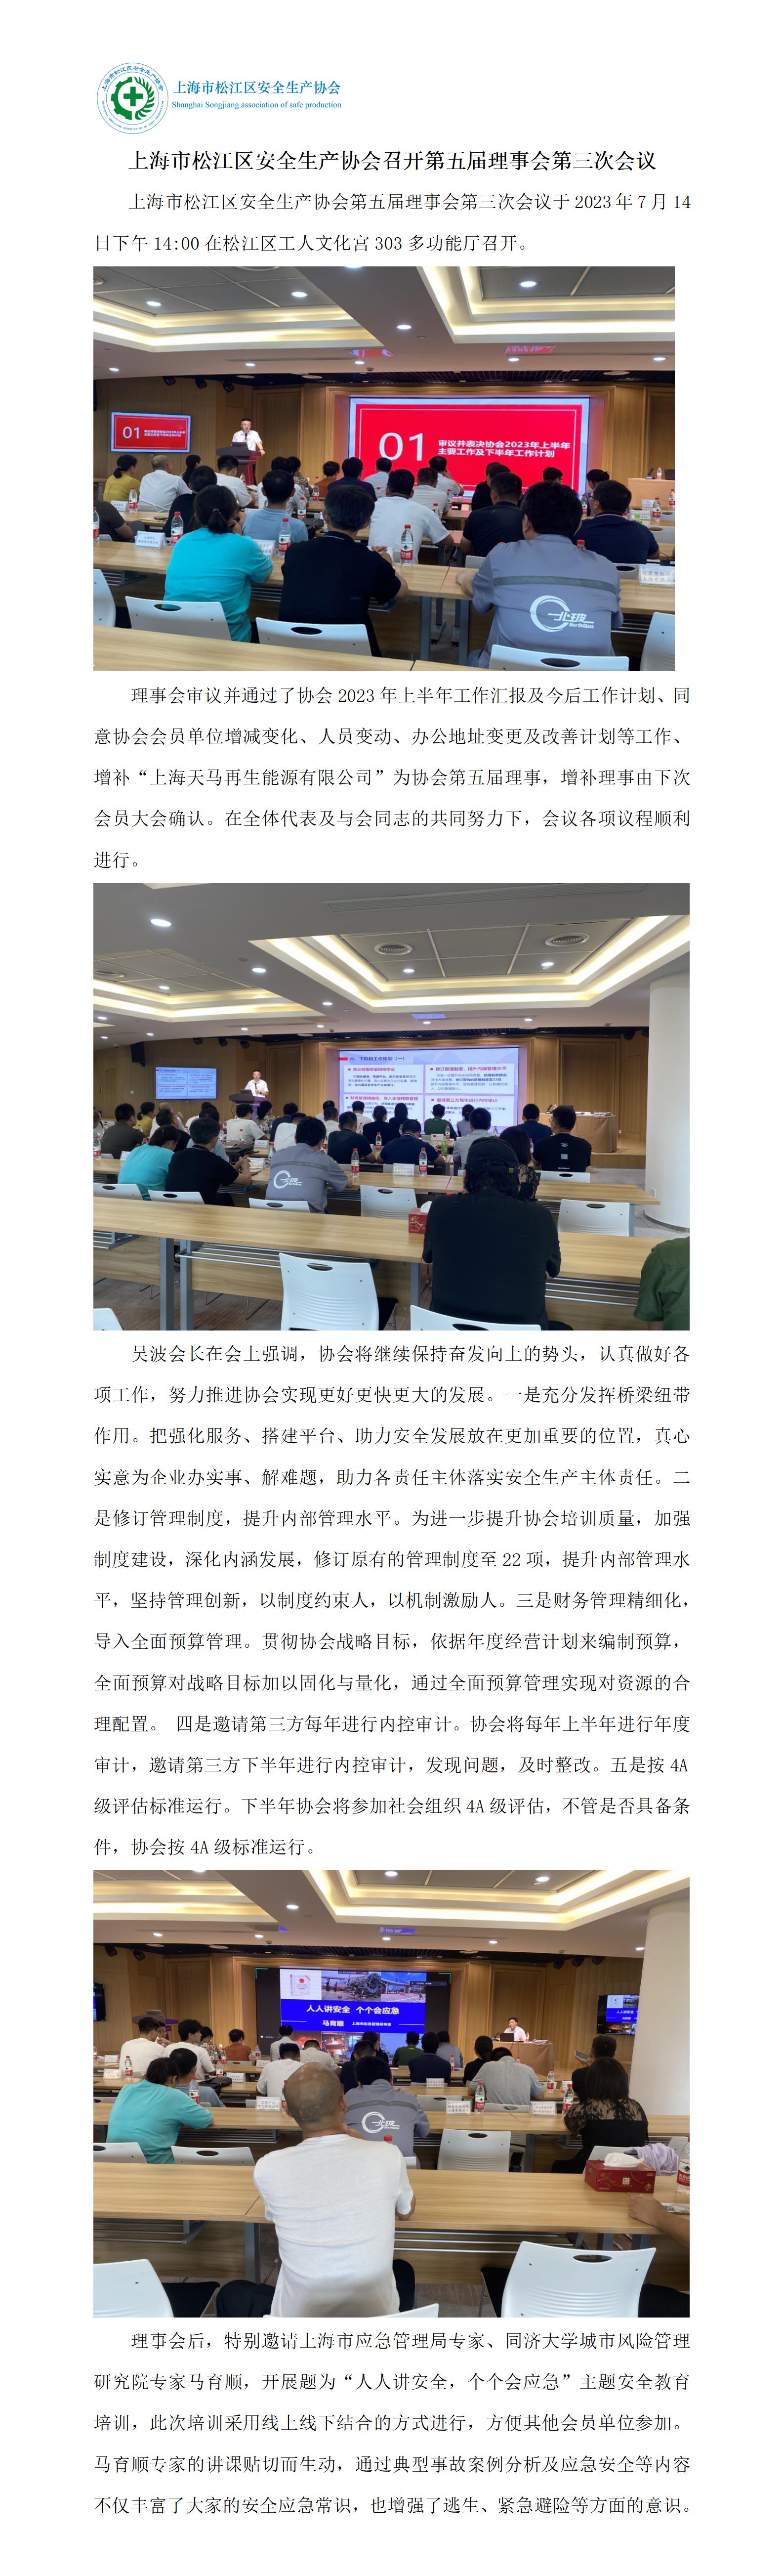 上海市松江区安全生产协会召开第五届理事会第三次会议(1)_01.jpg